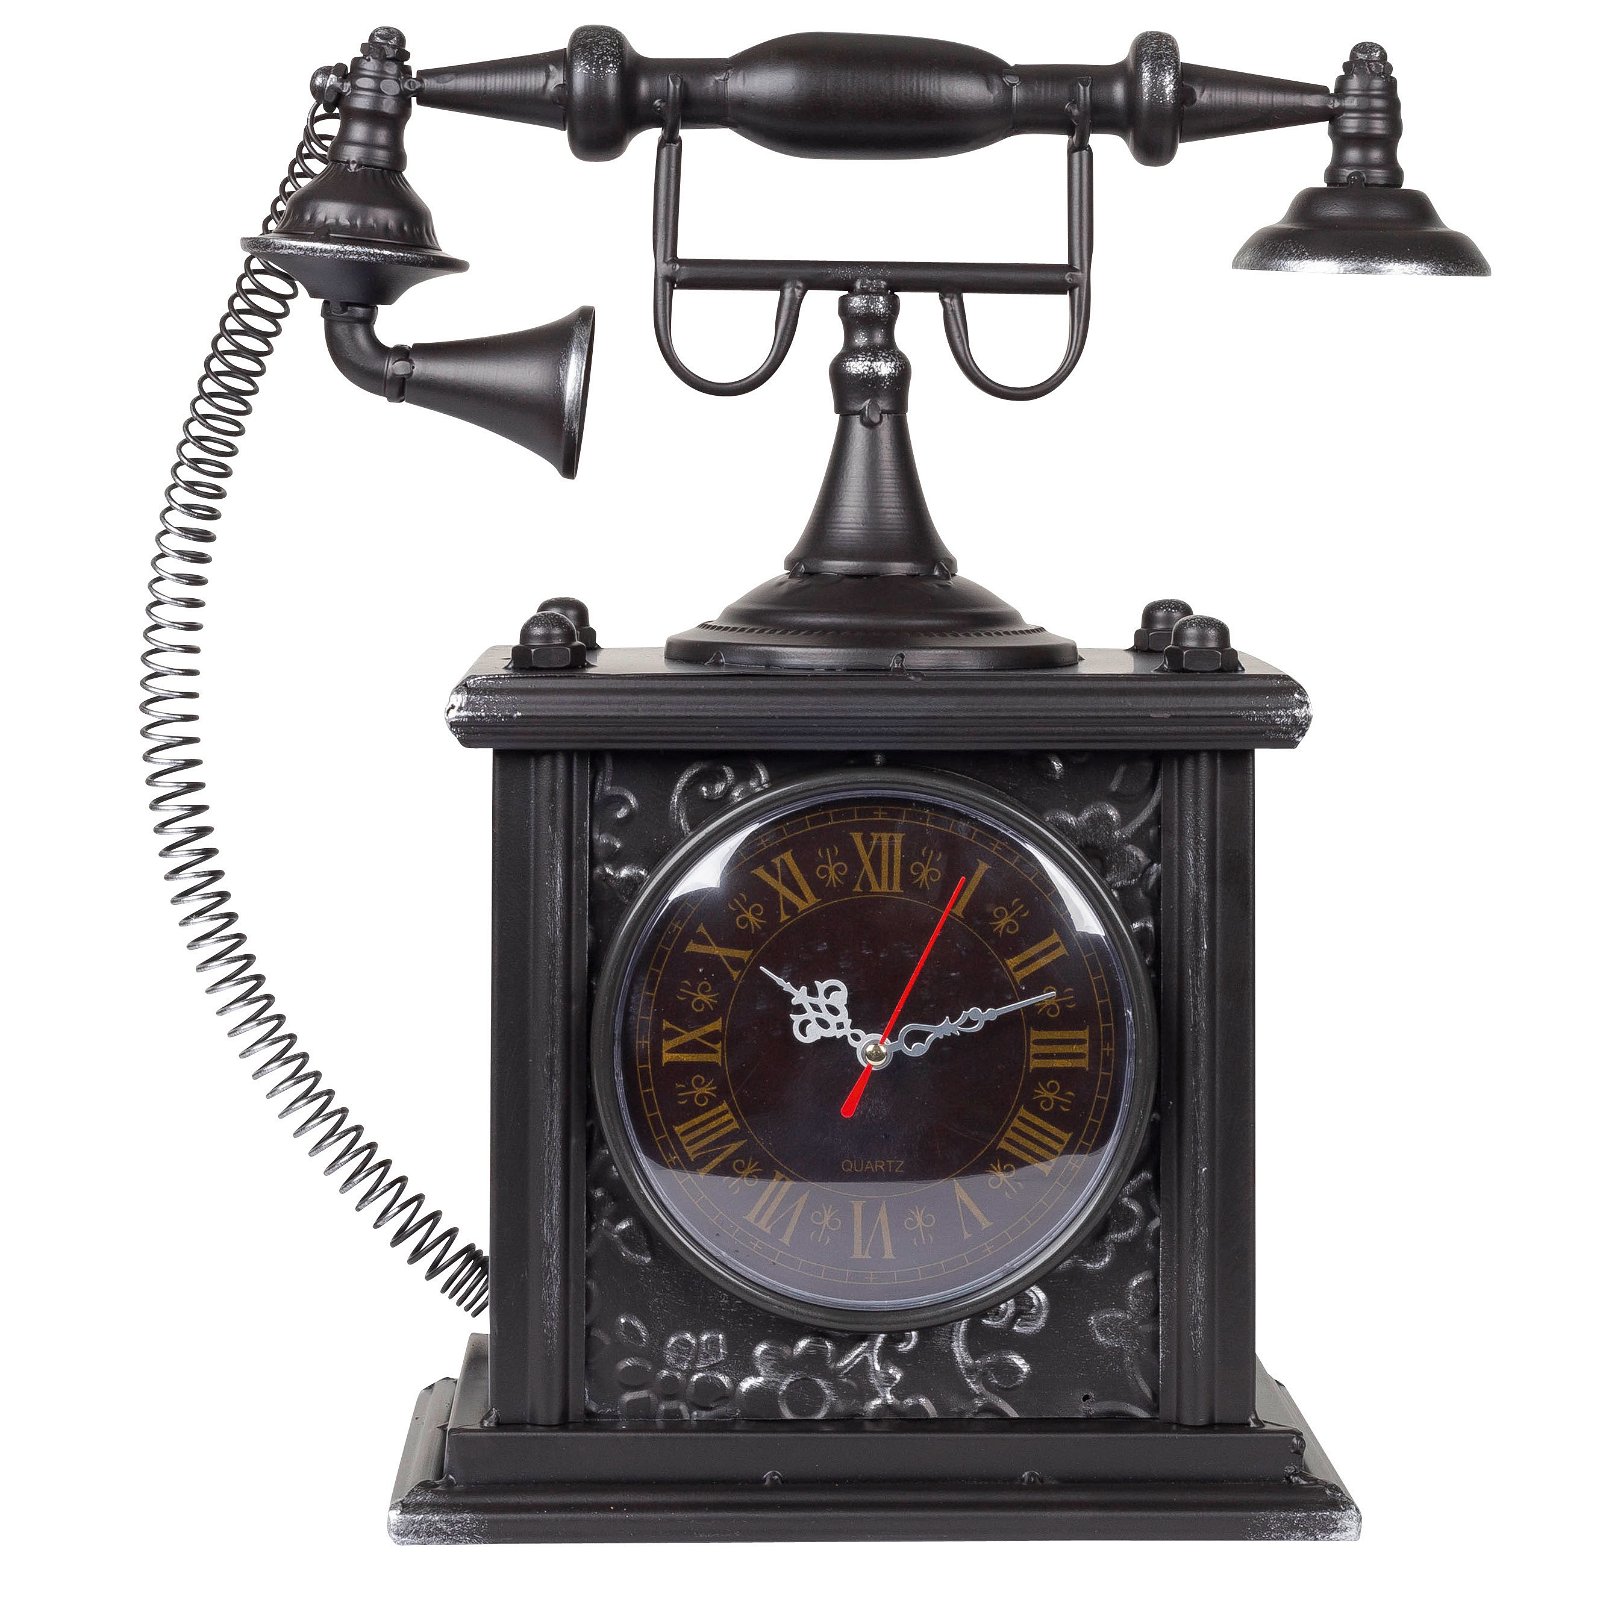 Telefon-Uhr, Metall, schwarz, römische Zahlen